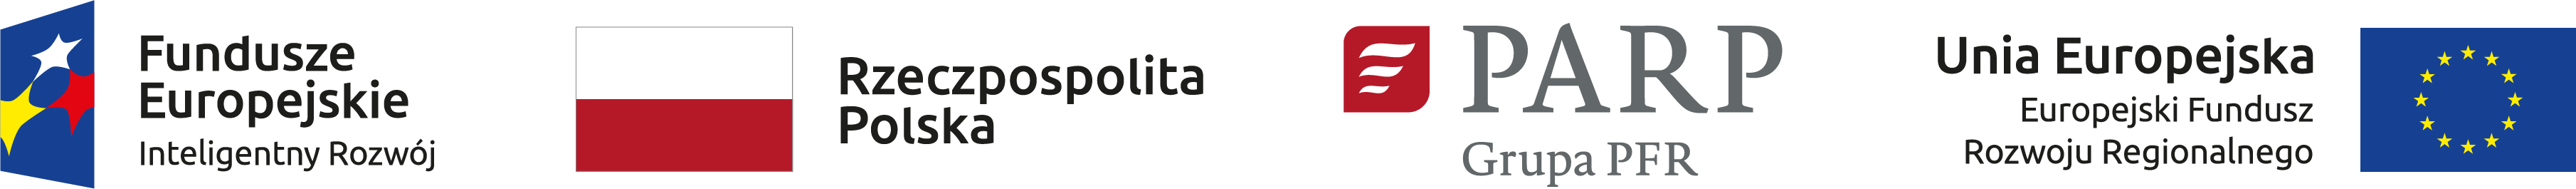 Ciąg Logotypów: Fundusze Europejskie Inteligentny Rozwój, Rzeczpospolita Polska, PARP Grupa PFR, Unia Europejska Europejski Fundusz Rozwoju Regionalnego.